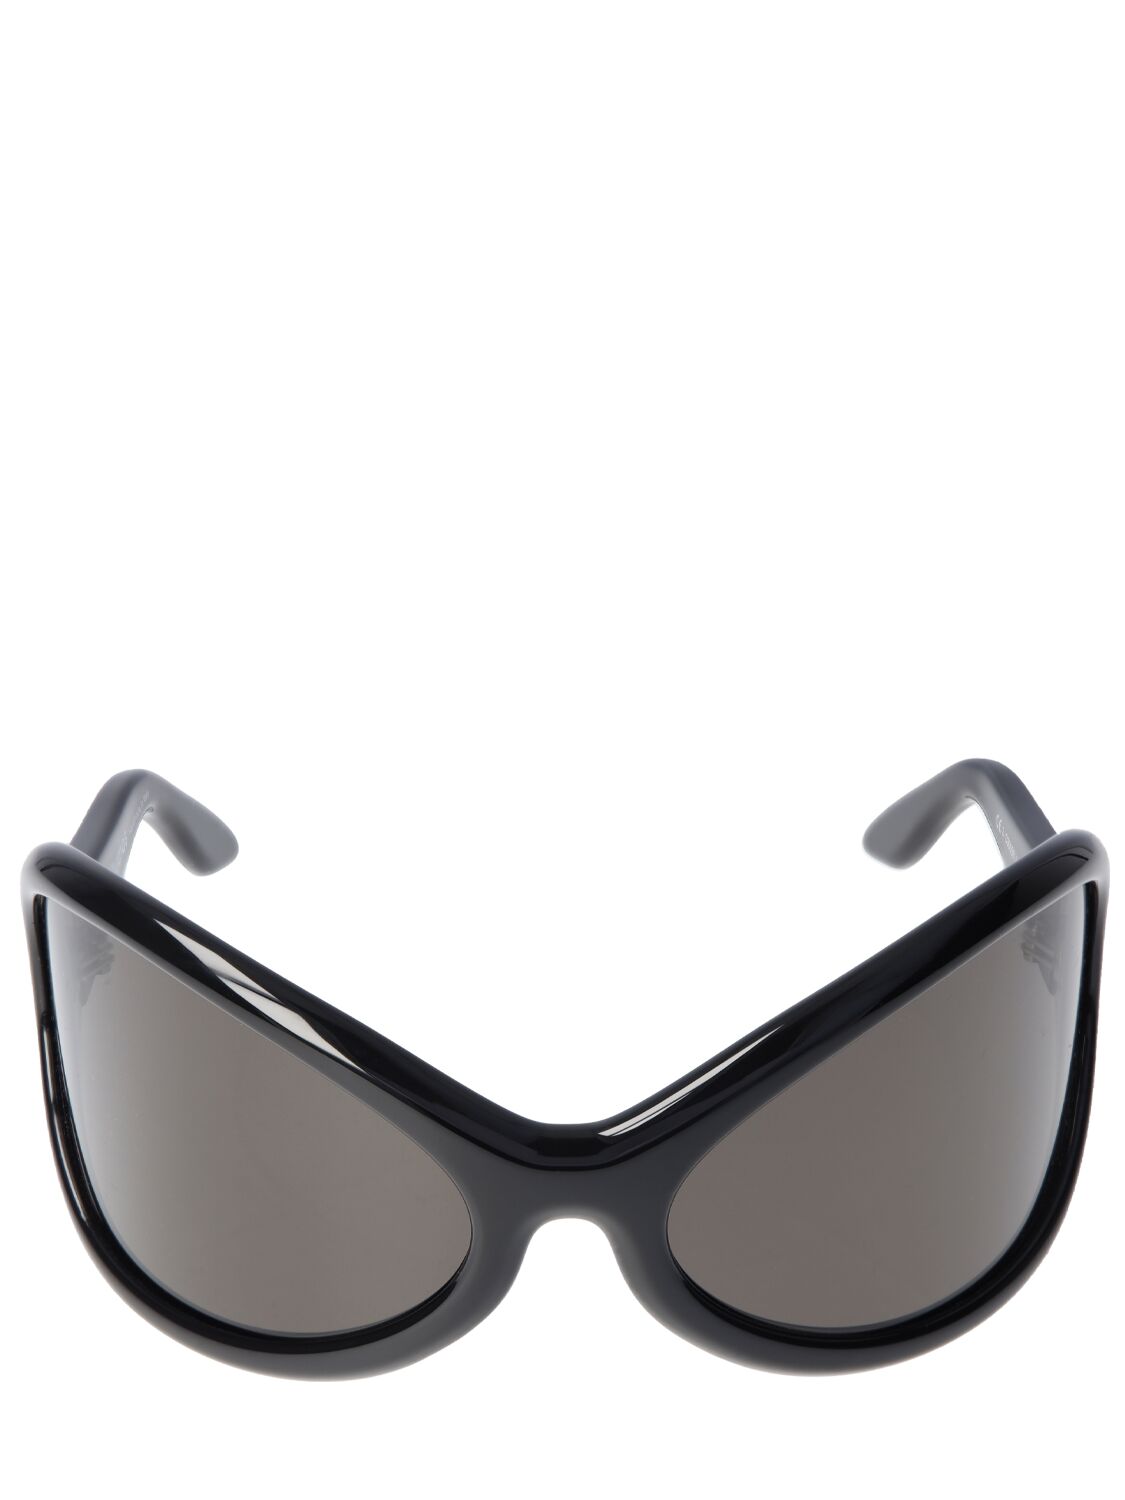 Acne Studios Arcturus New Oval Acetate Sunglasses In Black